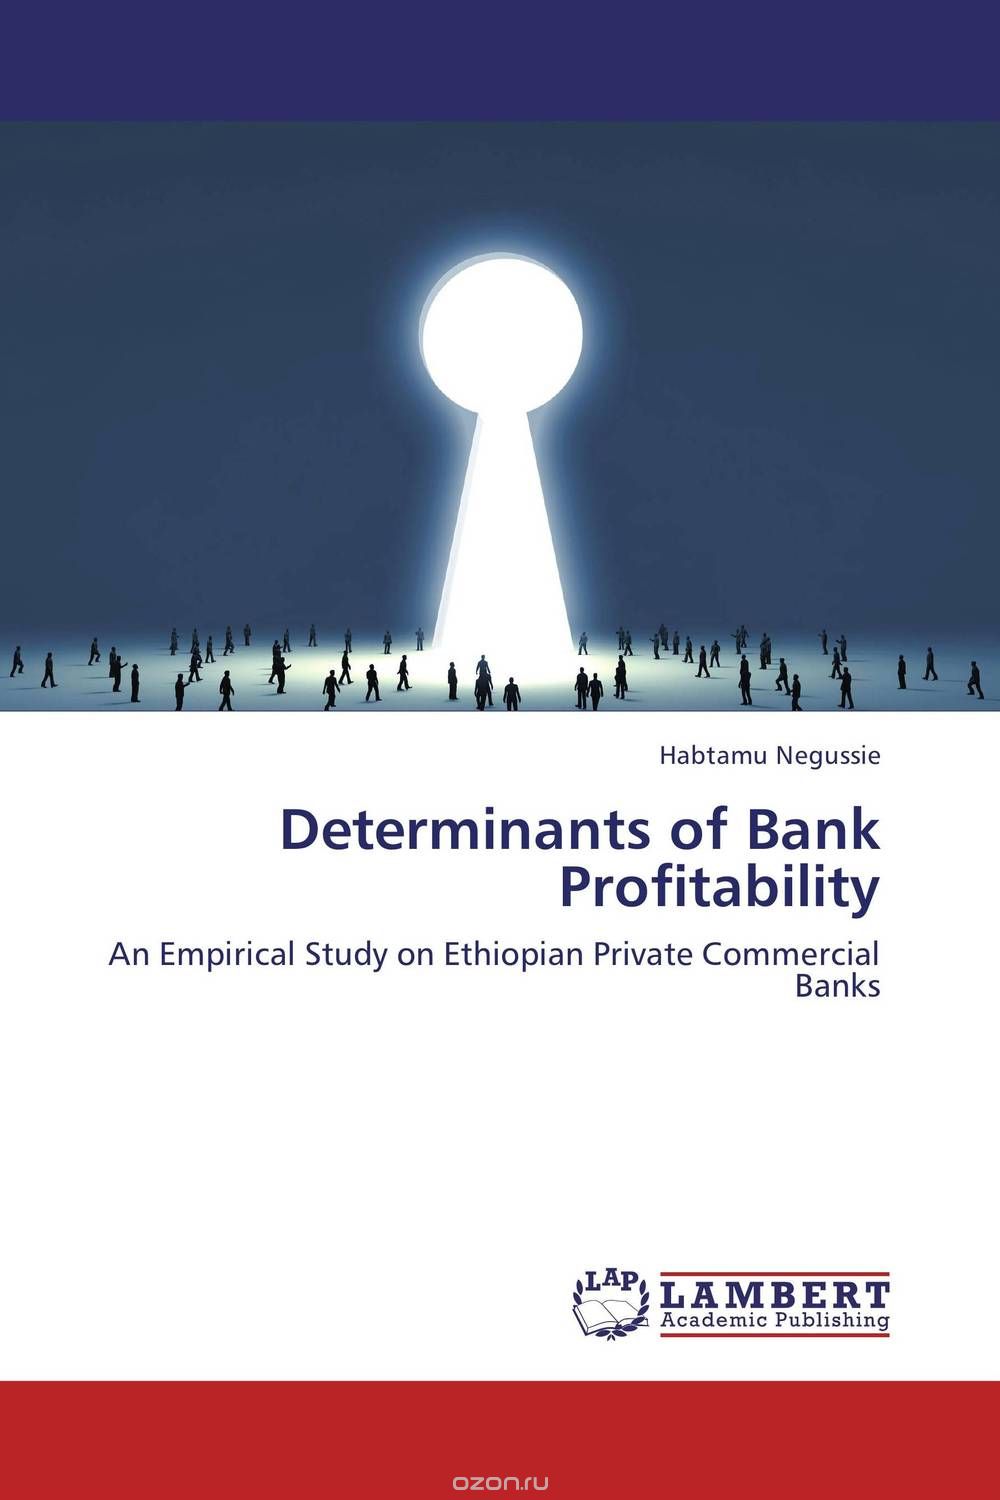 Скачать книгу "Determinants of Bank Profitability"